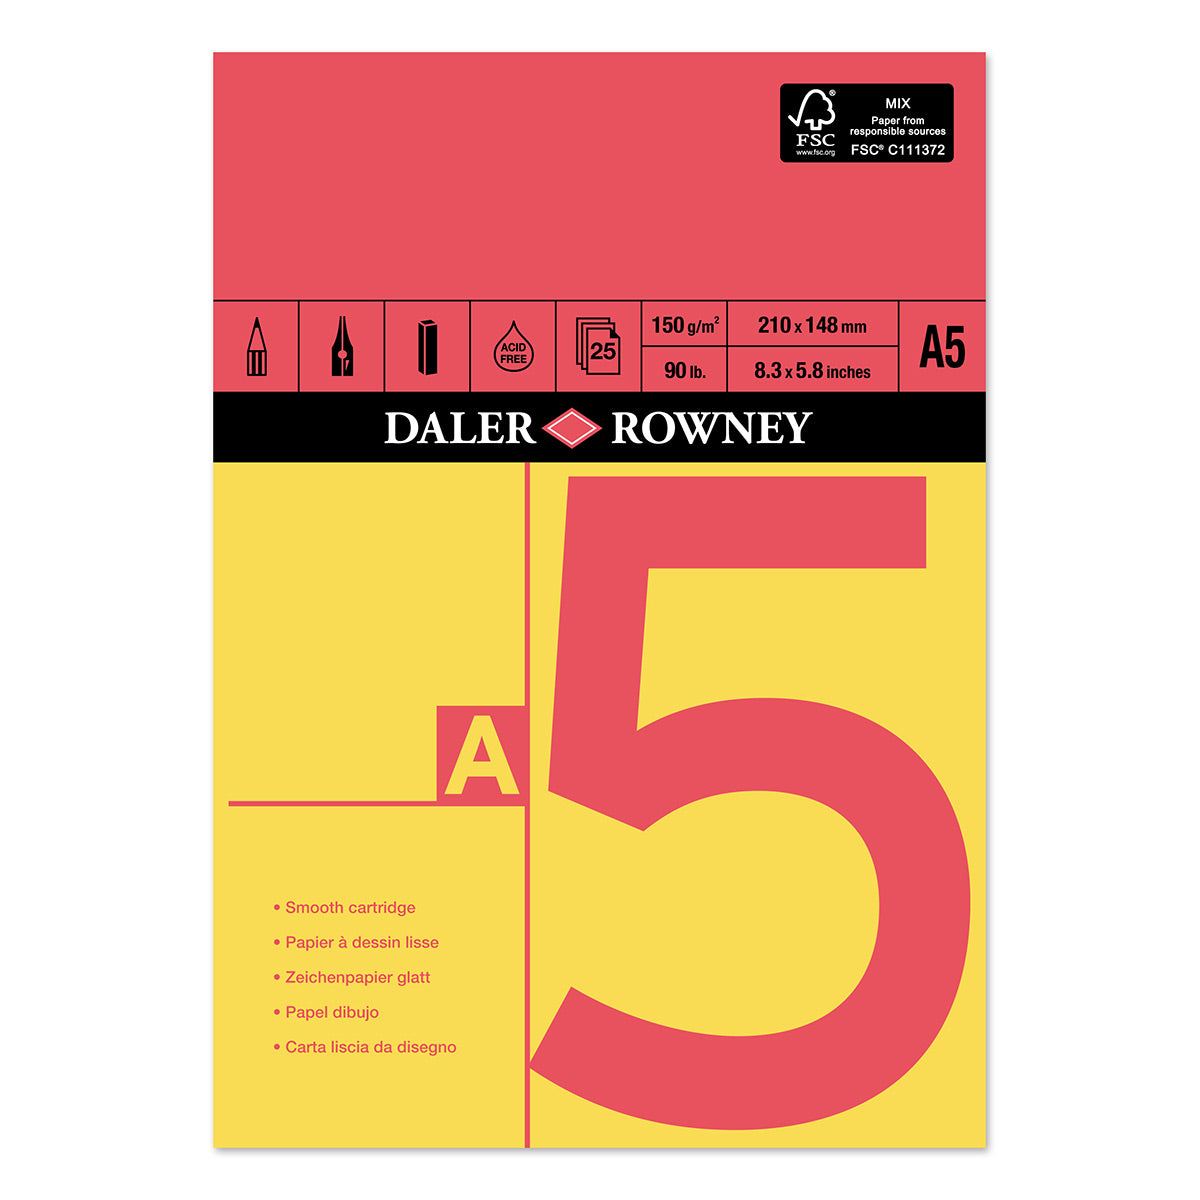 Daler Rowney - Blocco per schizzi a cartuccia gommata rossa e gialla - A5 - 150 g/m²